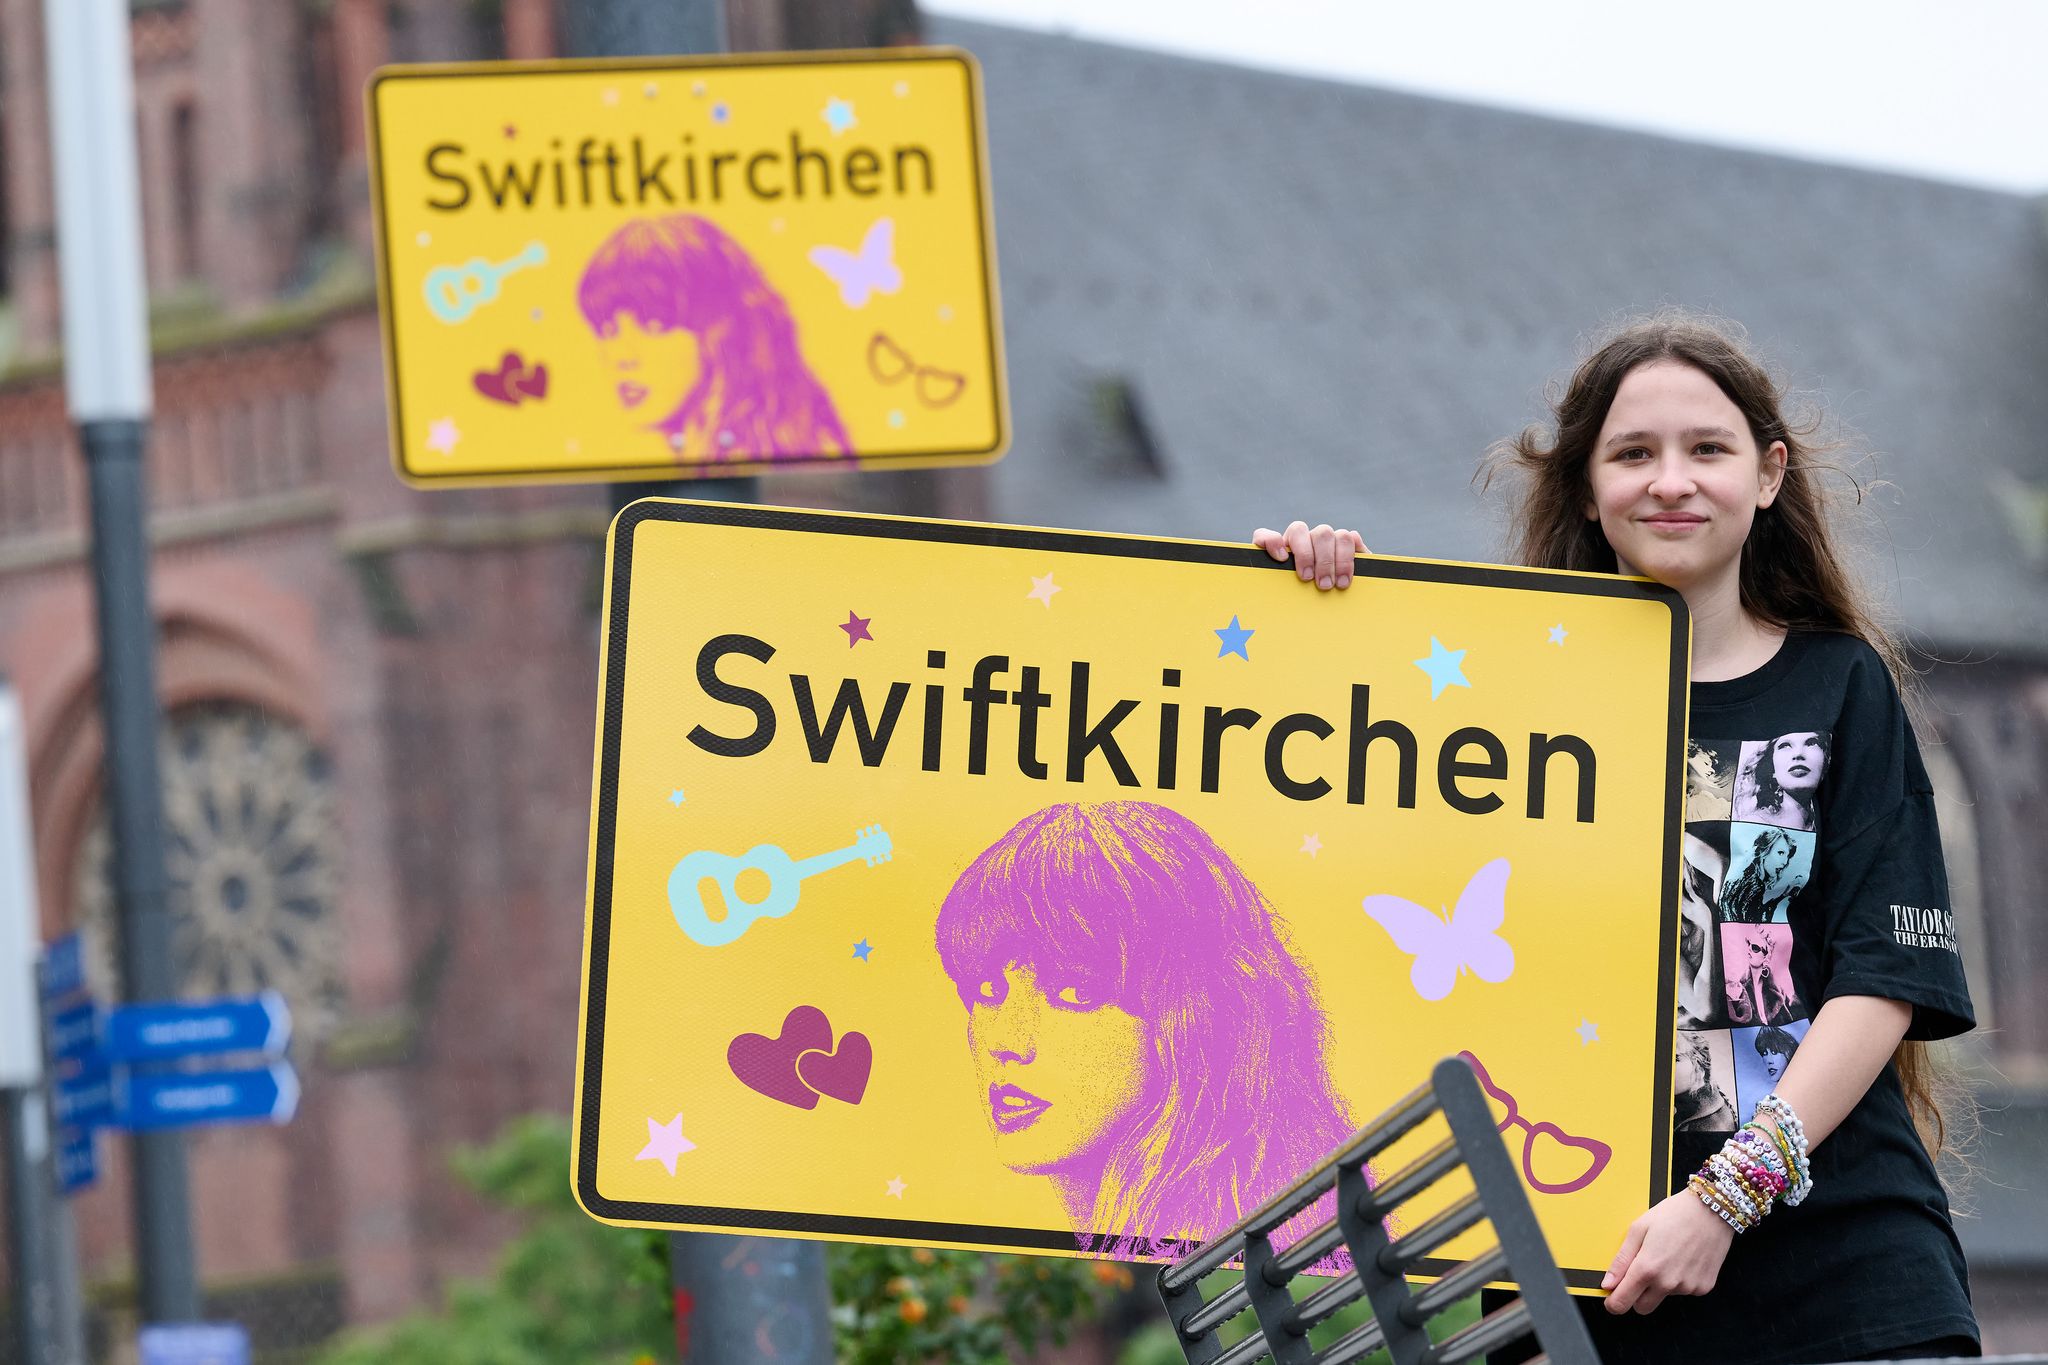 Die Stadt Gelsenkirchen wird im Juli Schauplatz für die «Eras Tour» von Superstar Taylor Swift - und gibt zu Ehren der Musikerin einen neuen Namen. Enthüllt wurde das «Swiftkirchen» von Swift-Fan Aleshanee Westhoff. Foto: Bernd Thissen/dpa